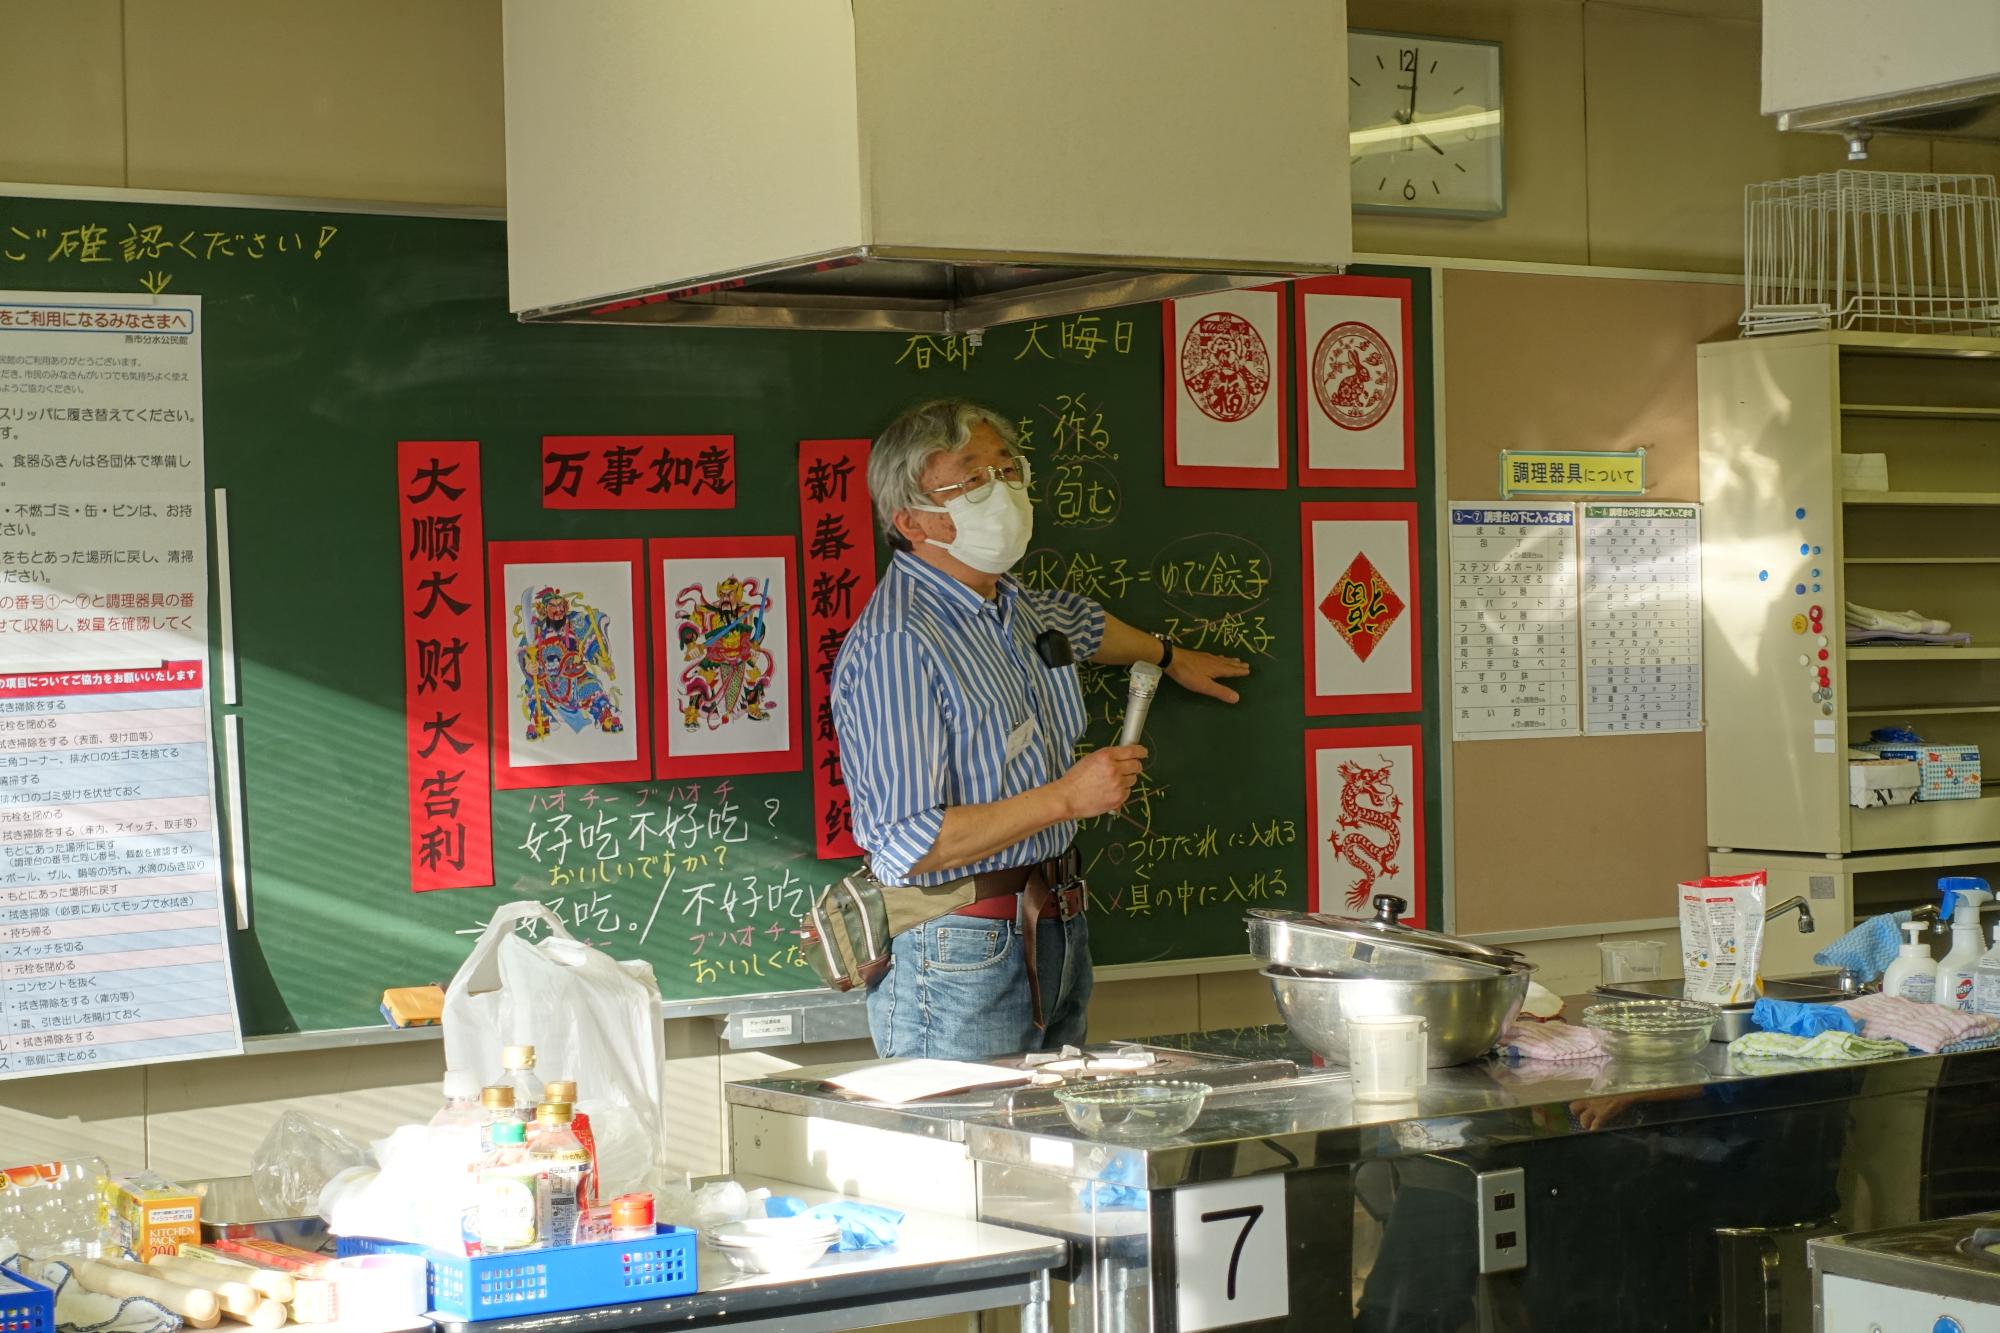 日本語講座の先生が日本と中国の文化を説明している様子